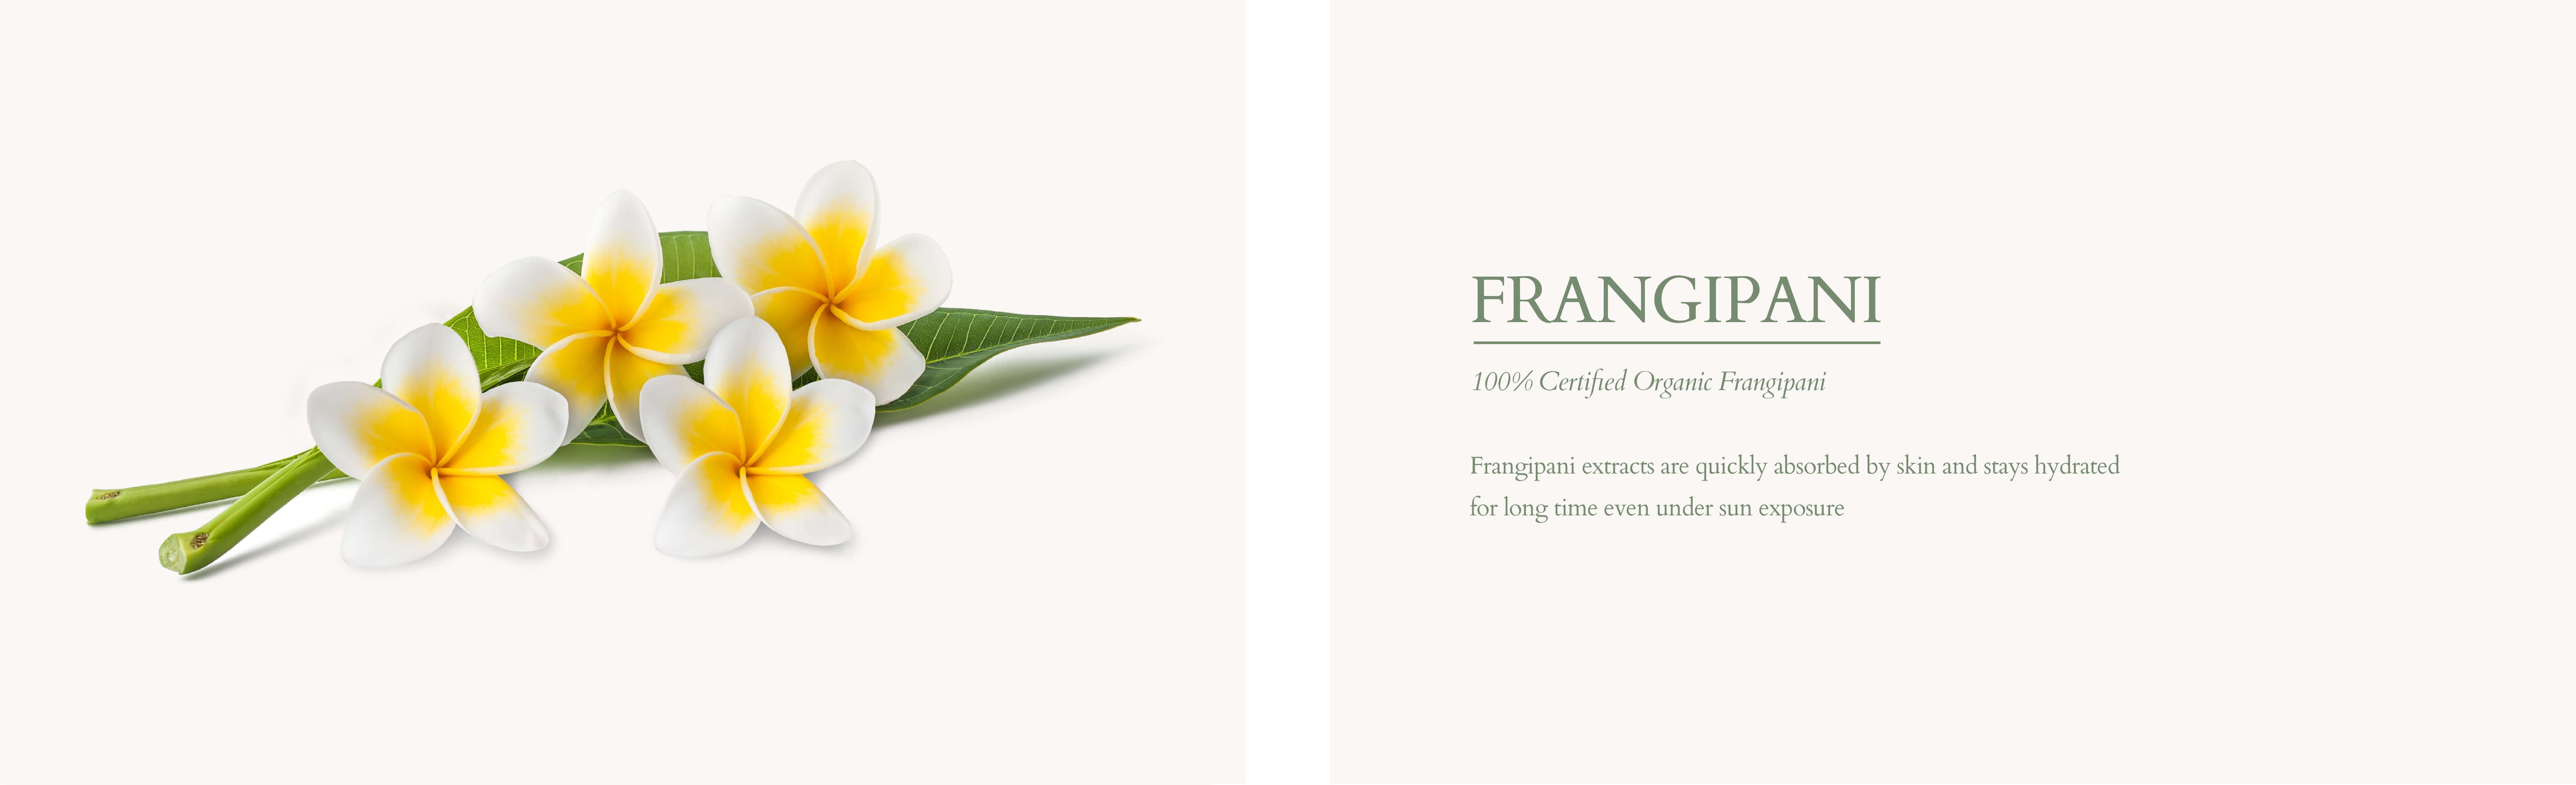 Organic frangipani for skin d37cea9e 0304 4aa2 8ba5 c4e6e2e61fef